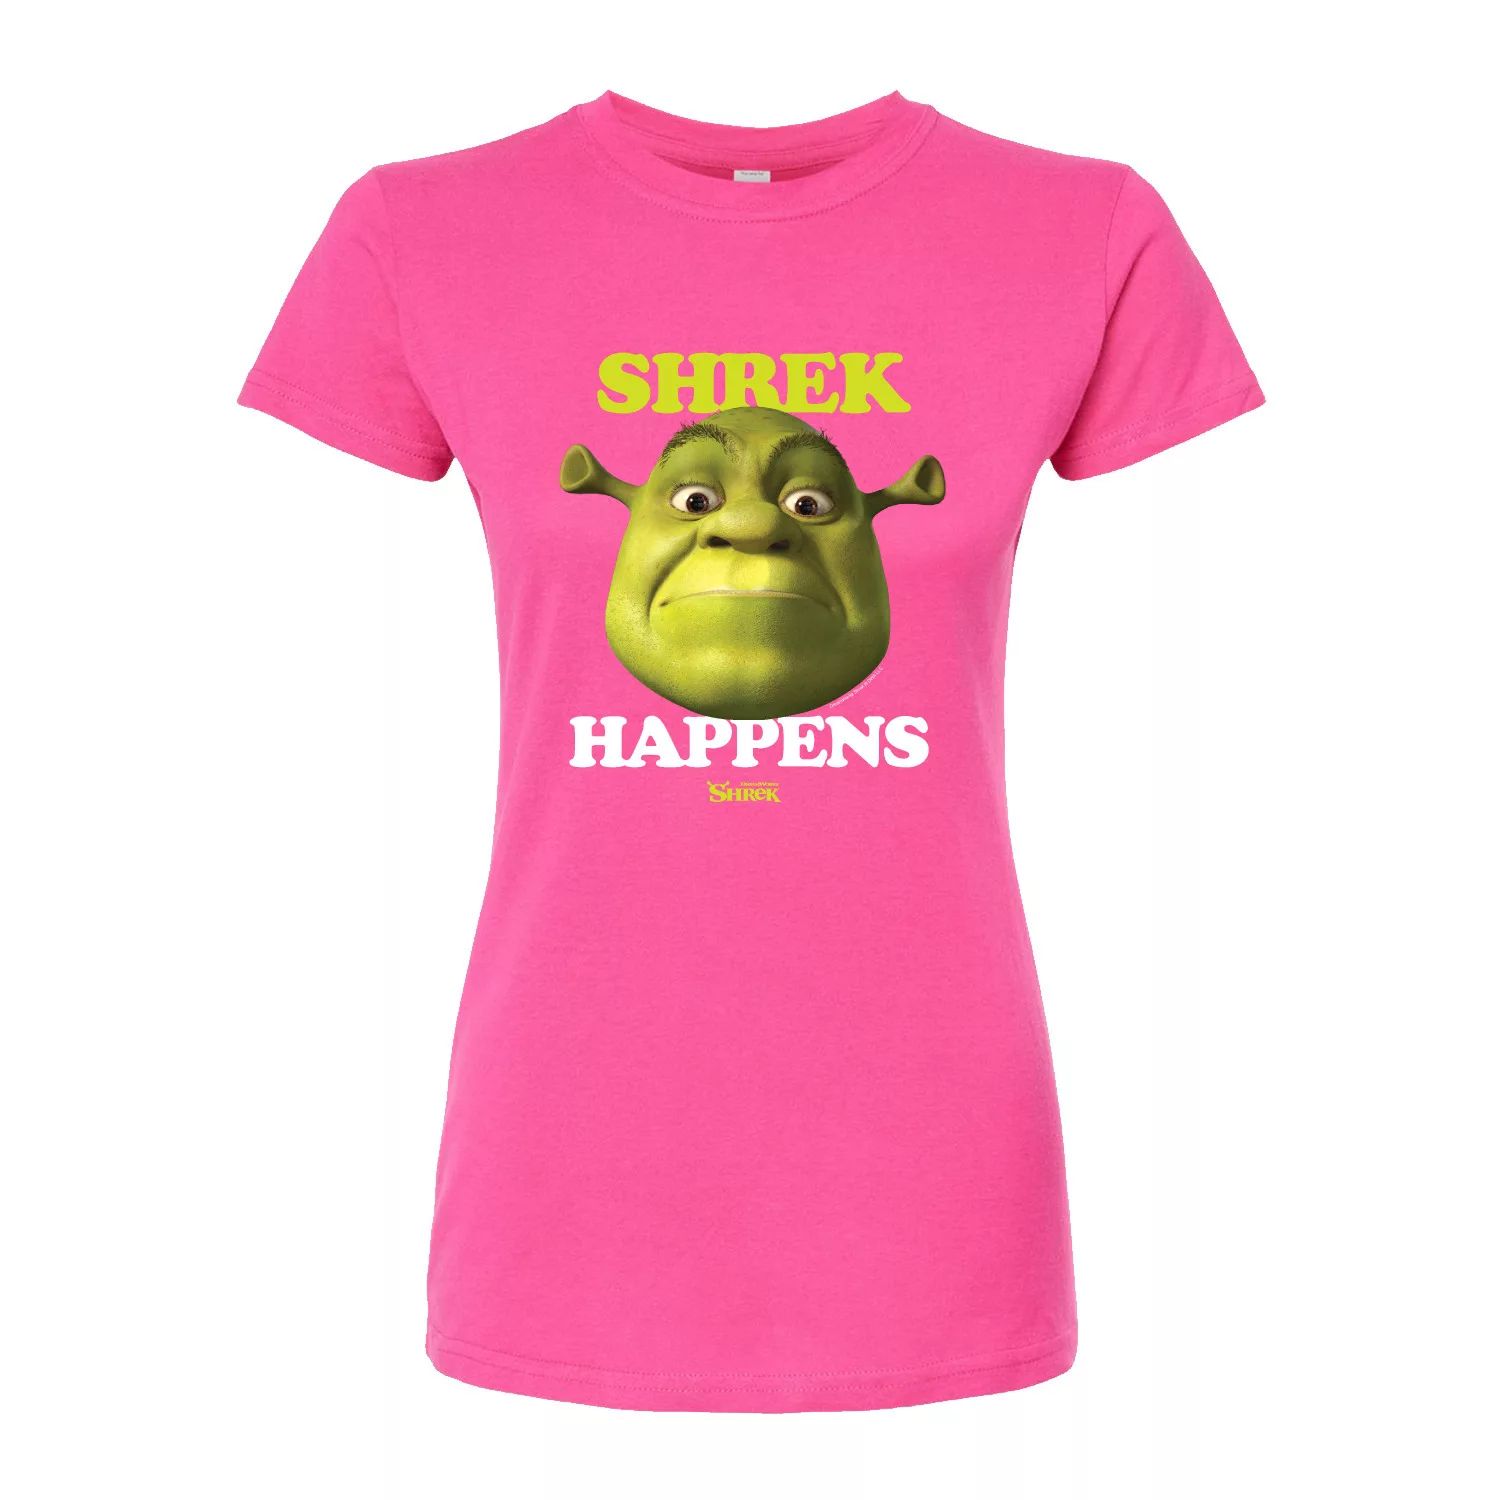 Облегающая футболка для юниоров Shrek Happens Meme Licensed Character, розовый укороченная толстовка с капюшоном для юниоров shrek happens licensed character розовый